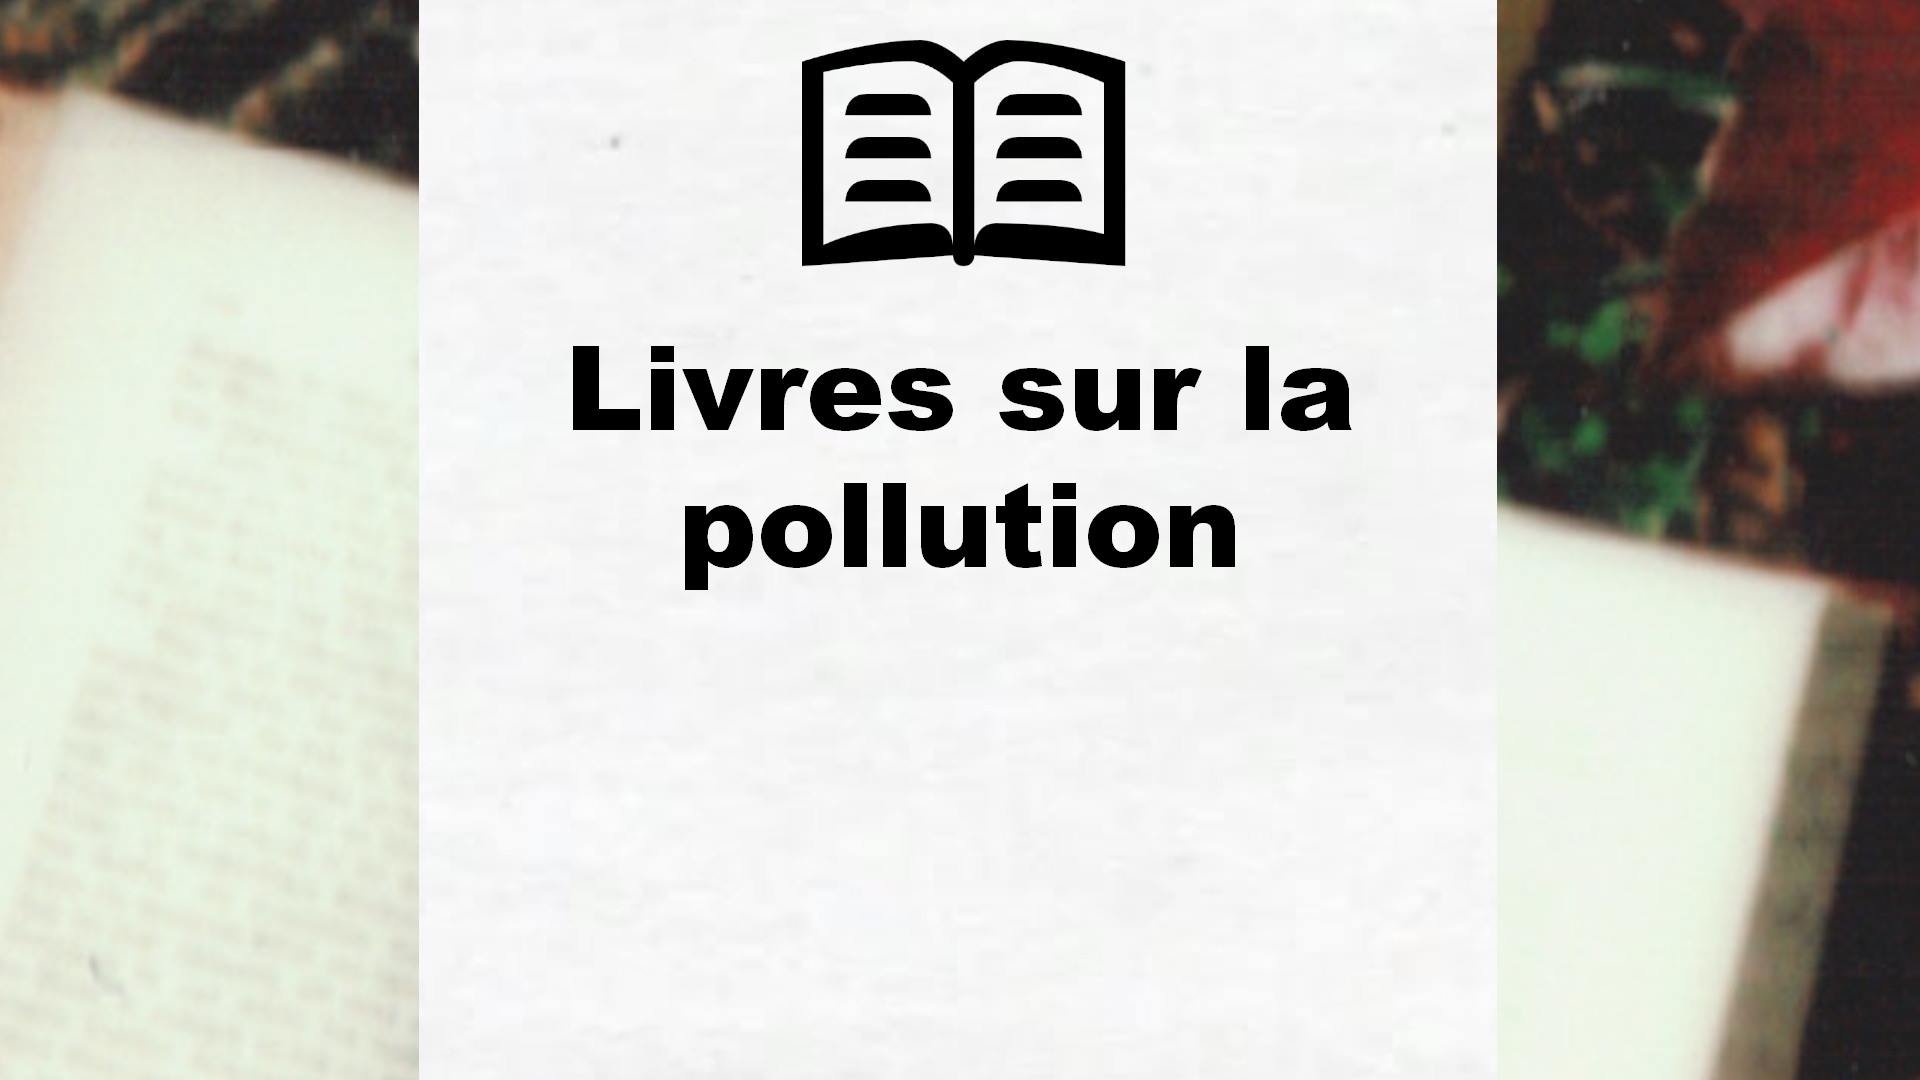 Livres sur la pollution